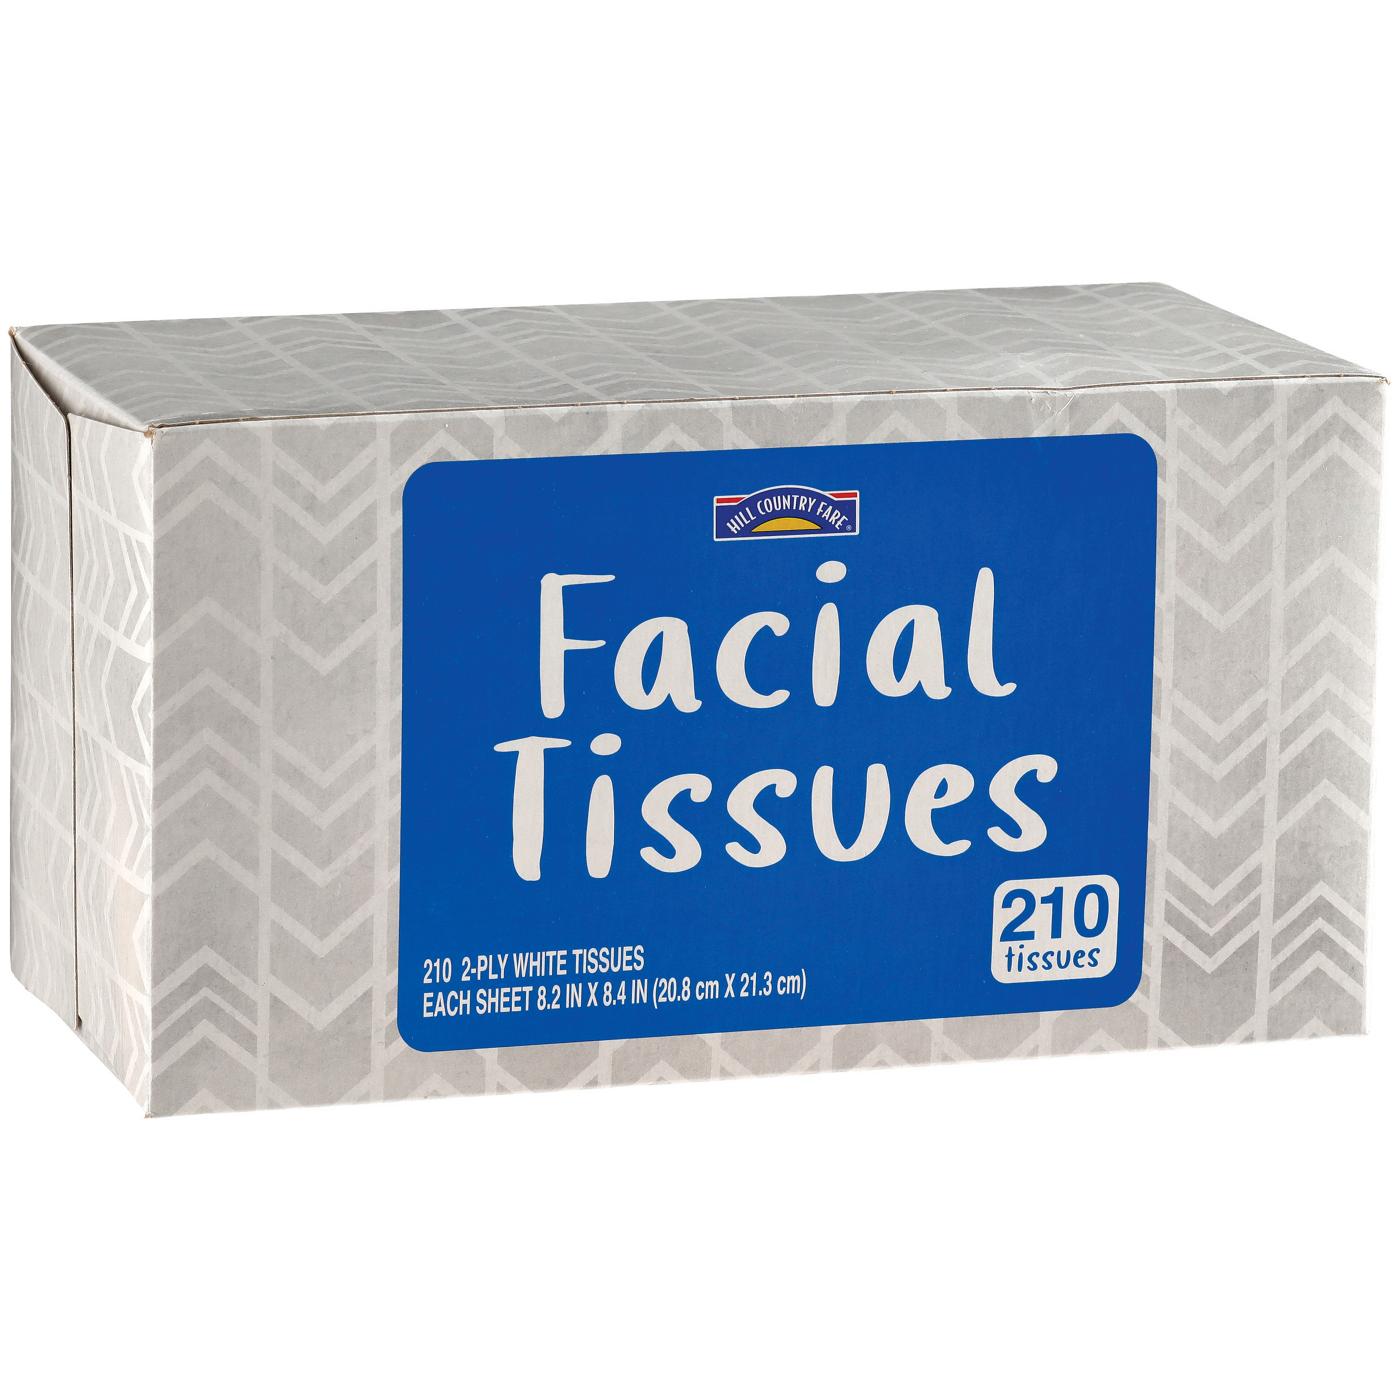 Hill Country Fare Facial Tissues - Shop Facial Tissue at H-E-B